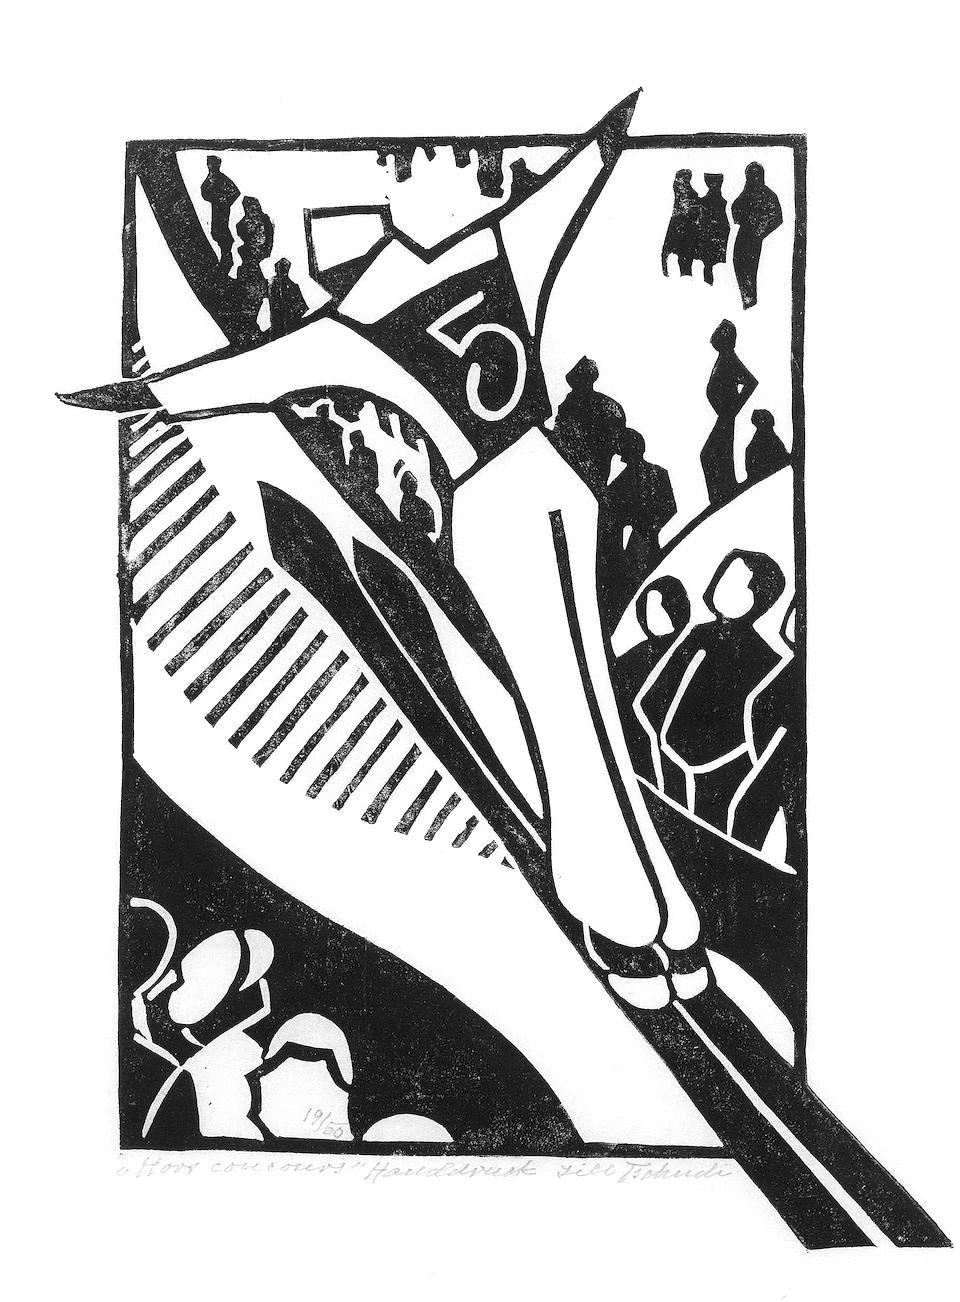 a Lill Tschudi lino-cut print of an olympic ski jumper